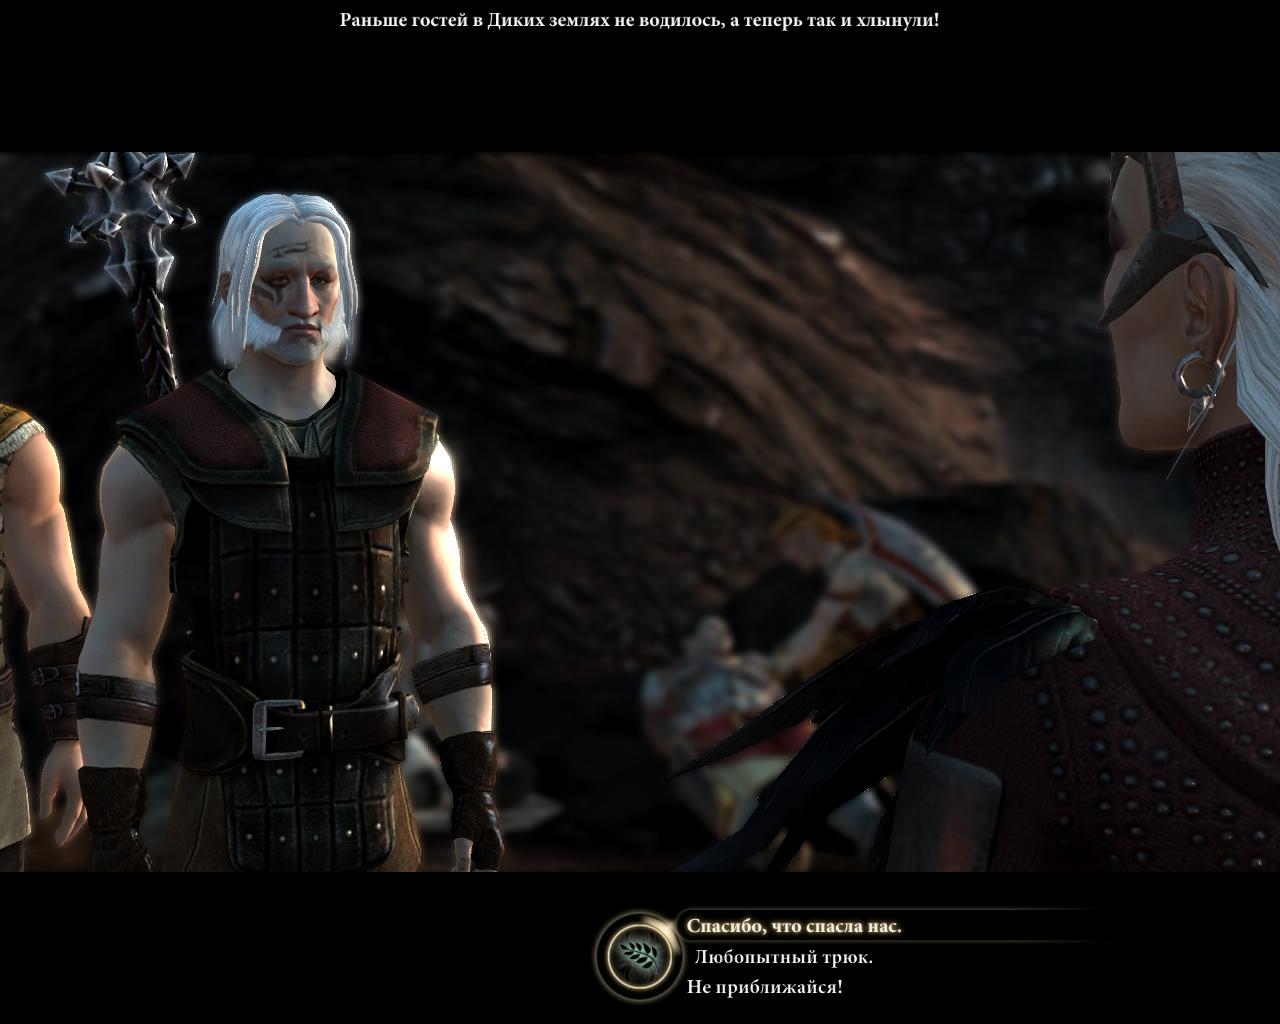 Скриншот из игры Dragon Age 2 под номером 63